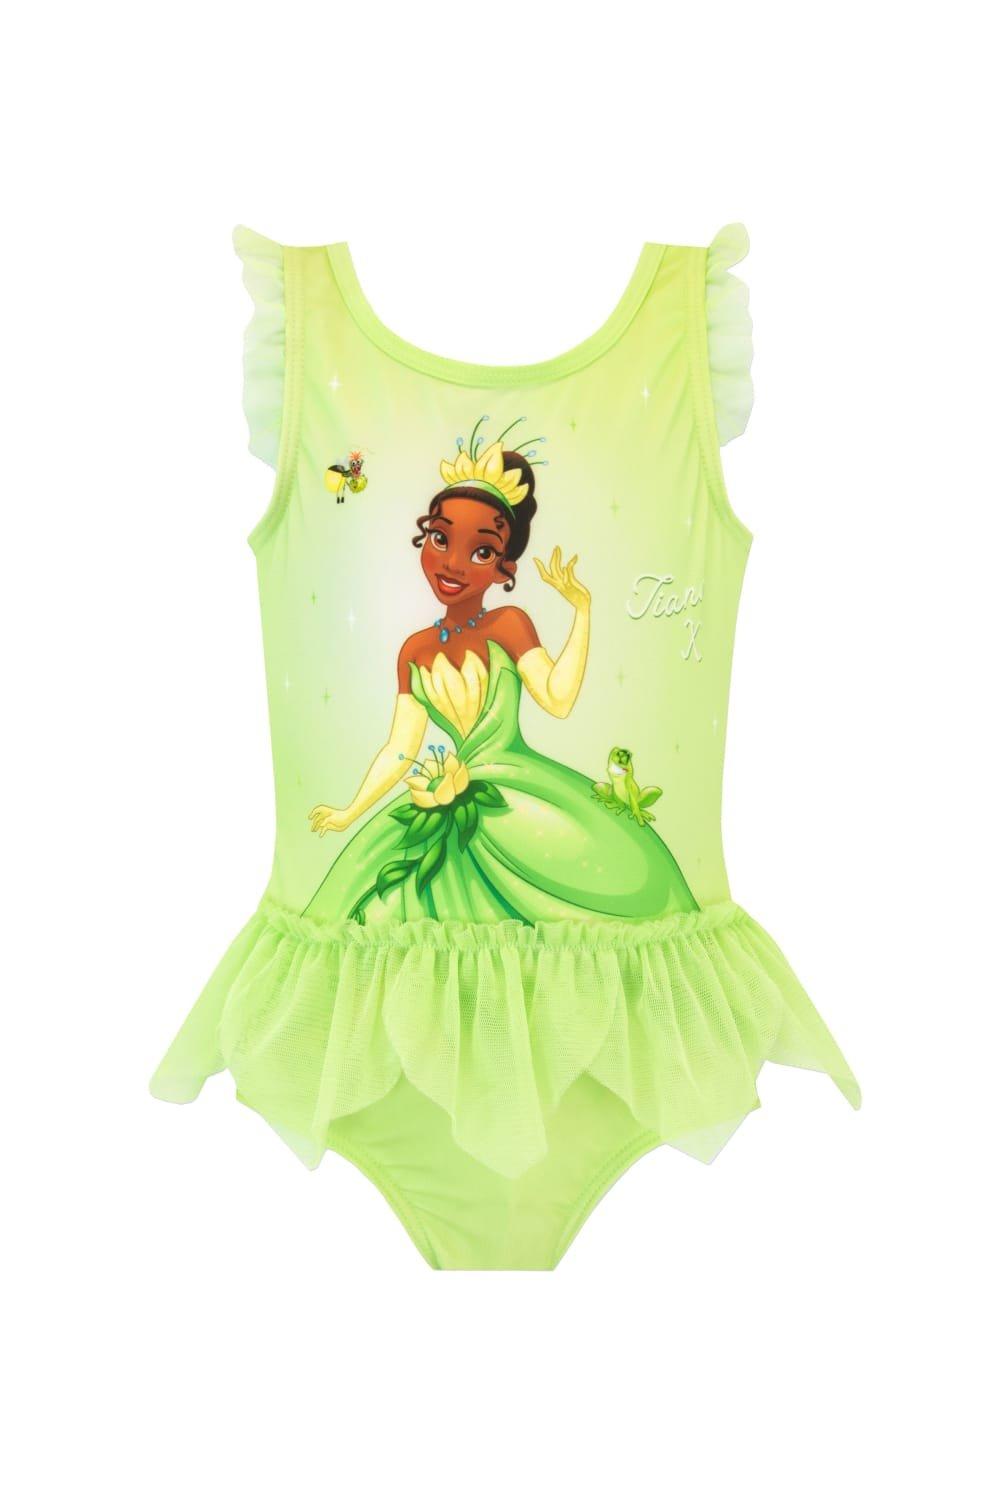 Купальник «Принцесса и лягушка Тиана» Disney, зеленый сумка принцесса лягушка зеленый